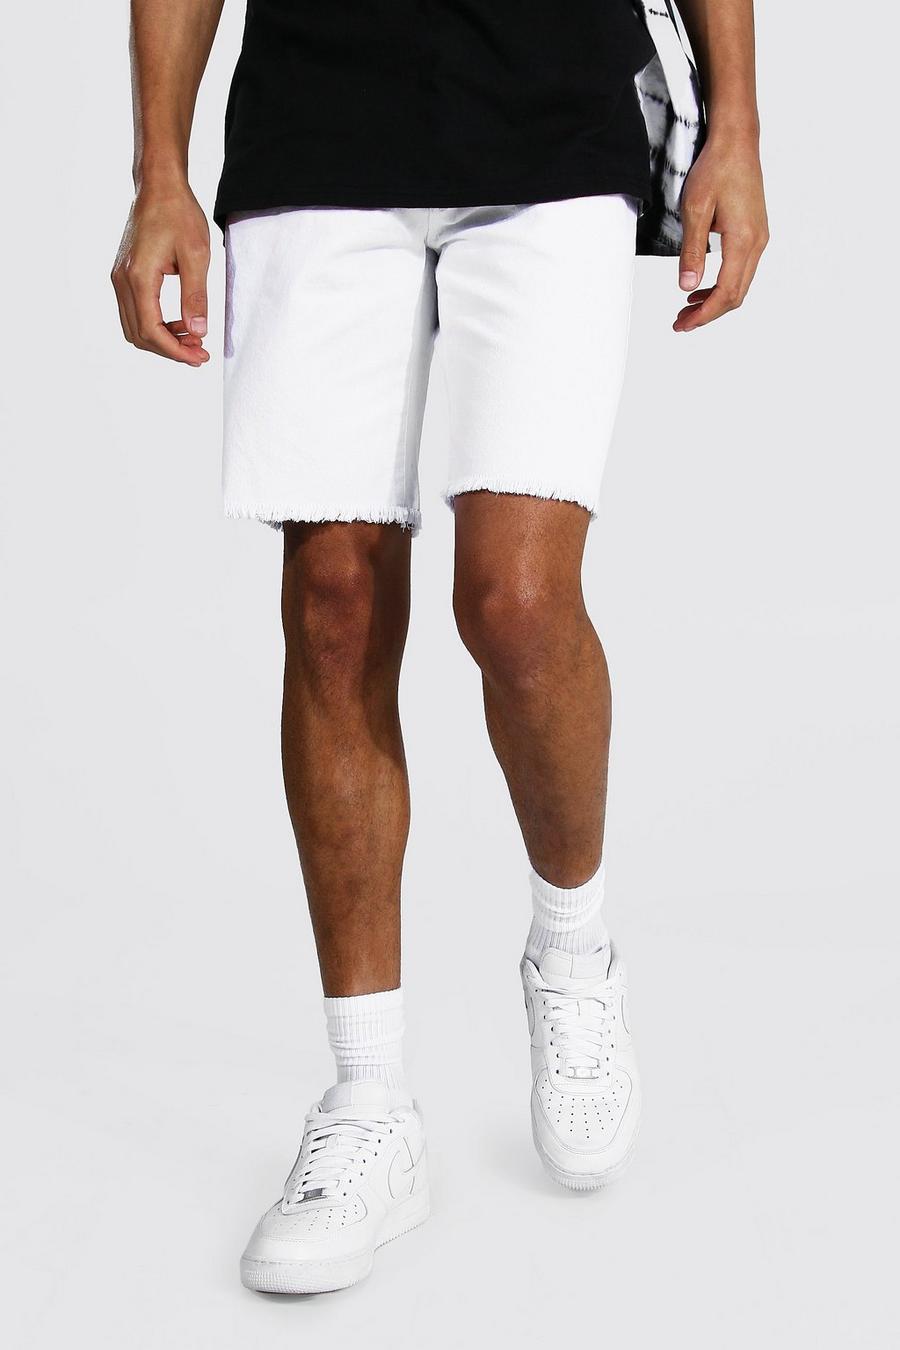 Pantalones cortos vaqueros rasgados rígidos de corte ajustado con bajo sin rematar, Blanco image number 1